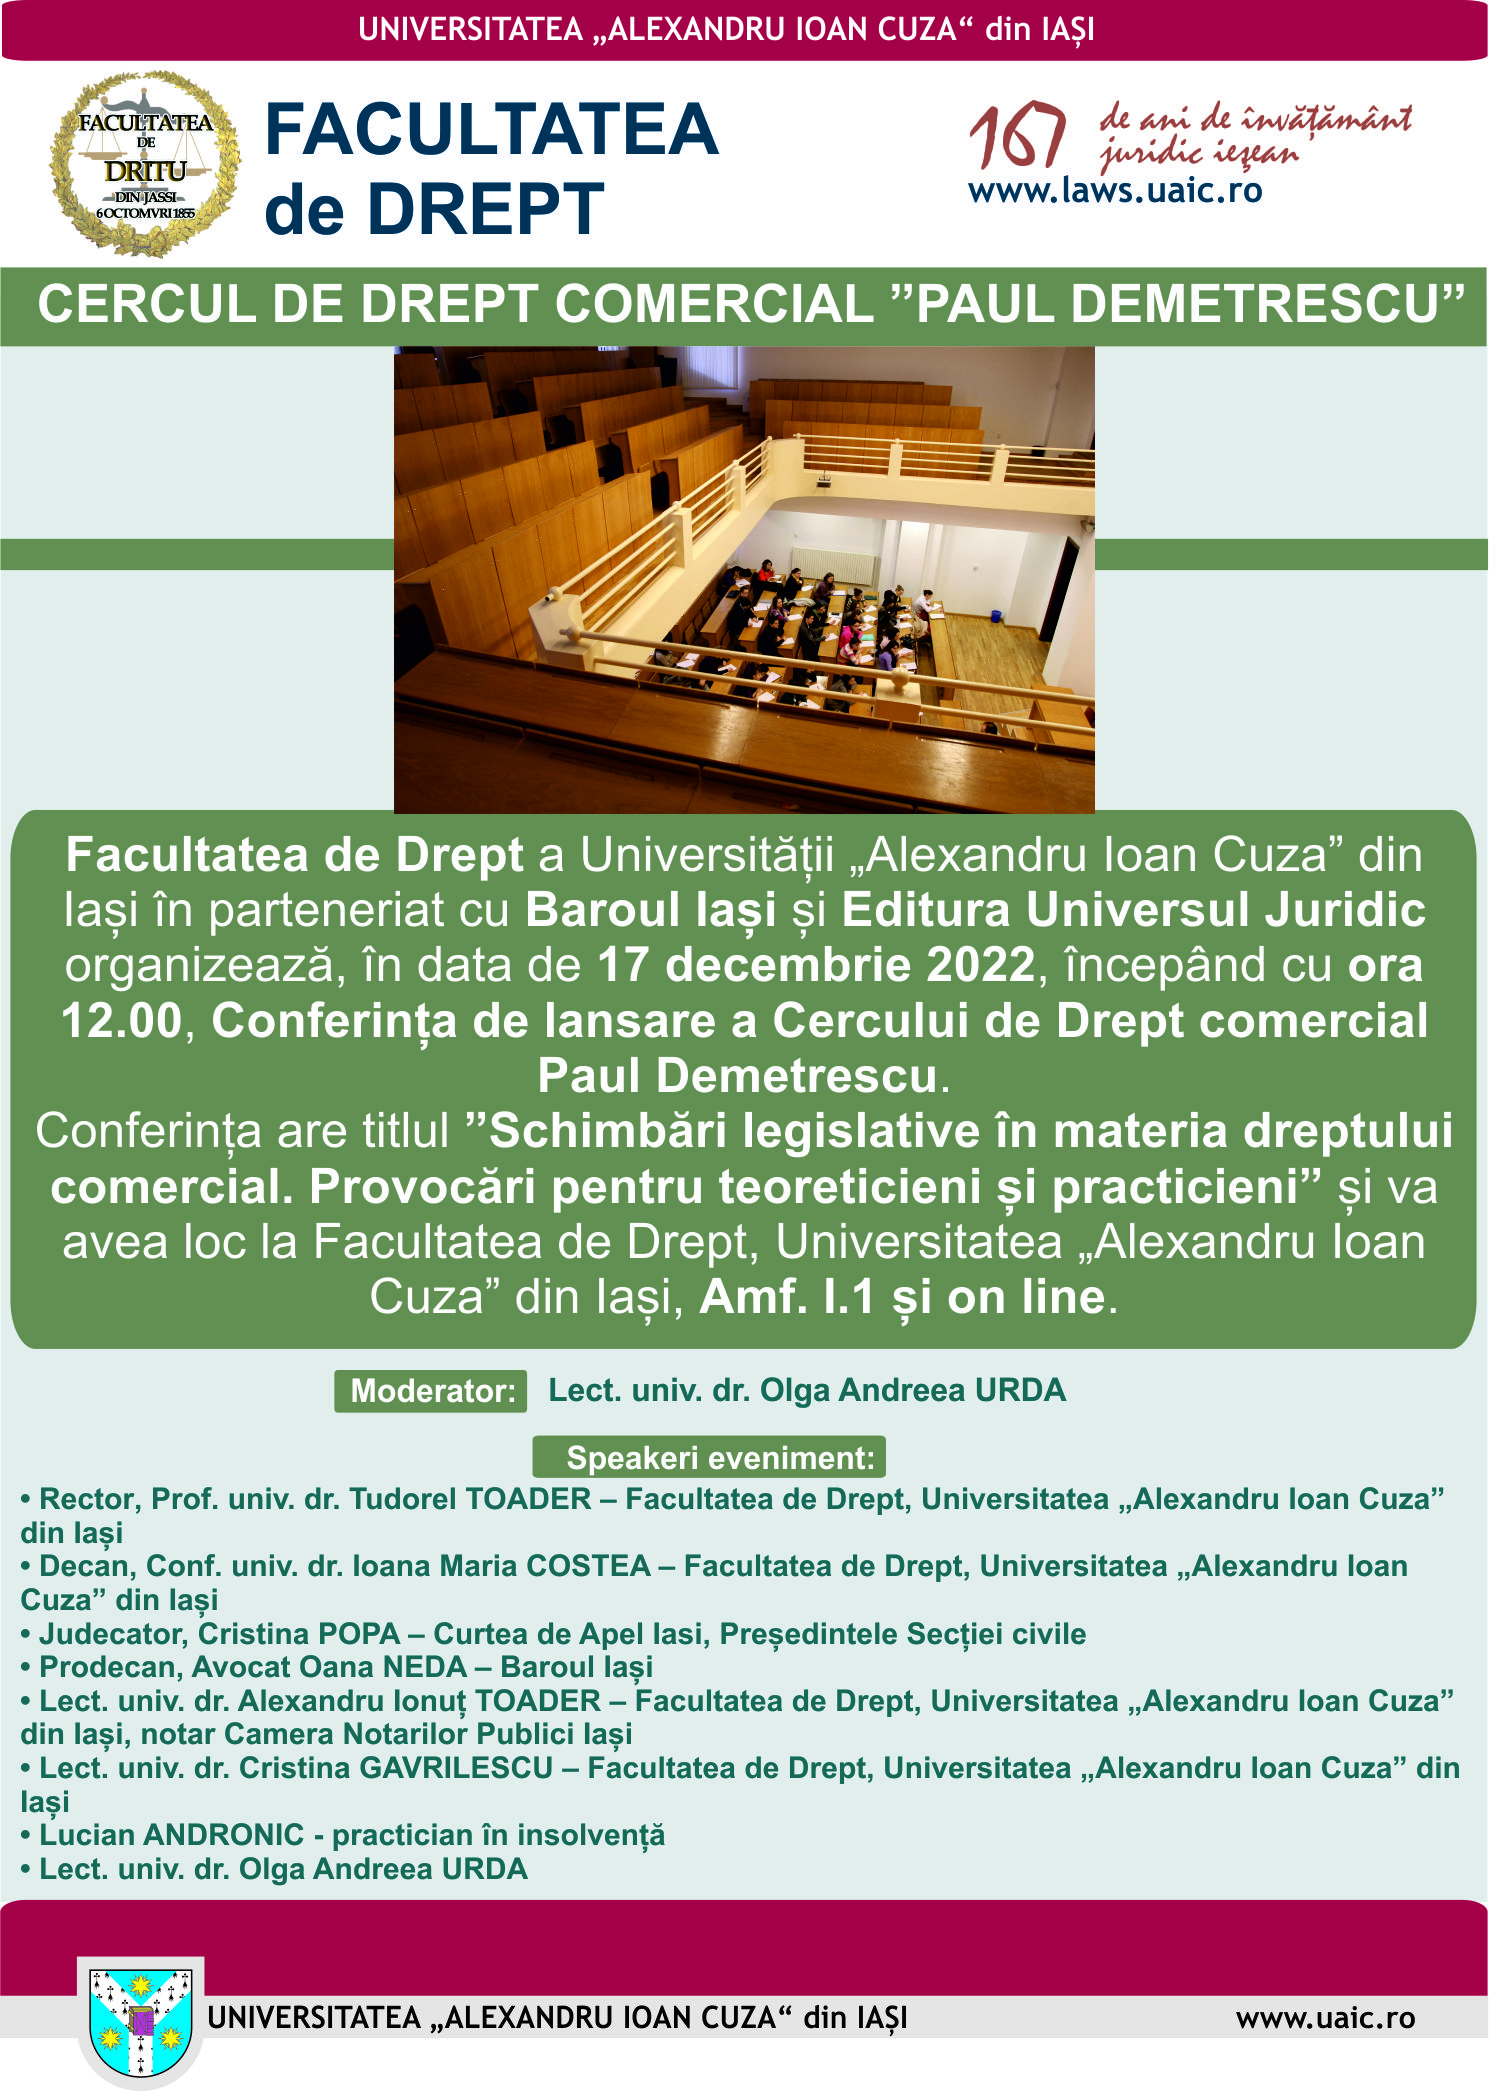 Conferința de lansare a Cercului de Drept comercial Paul Demetrescu, conferinţă cu titlul ”Schimbări legislative în materia dreptului comercial. Provocări pentru teoreticieni și practicieni”